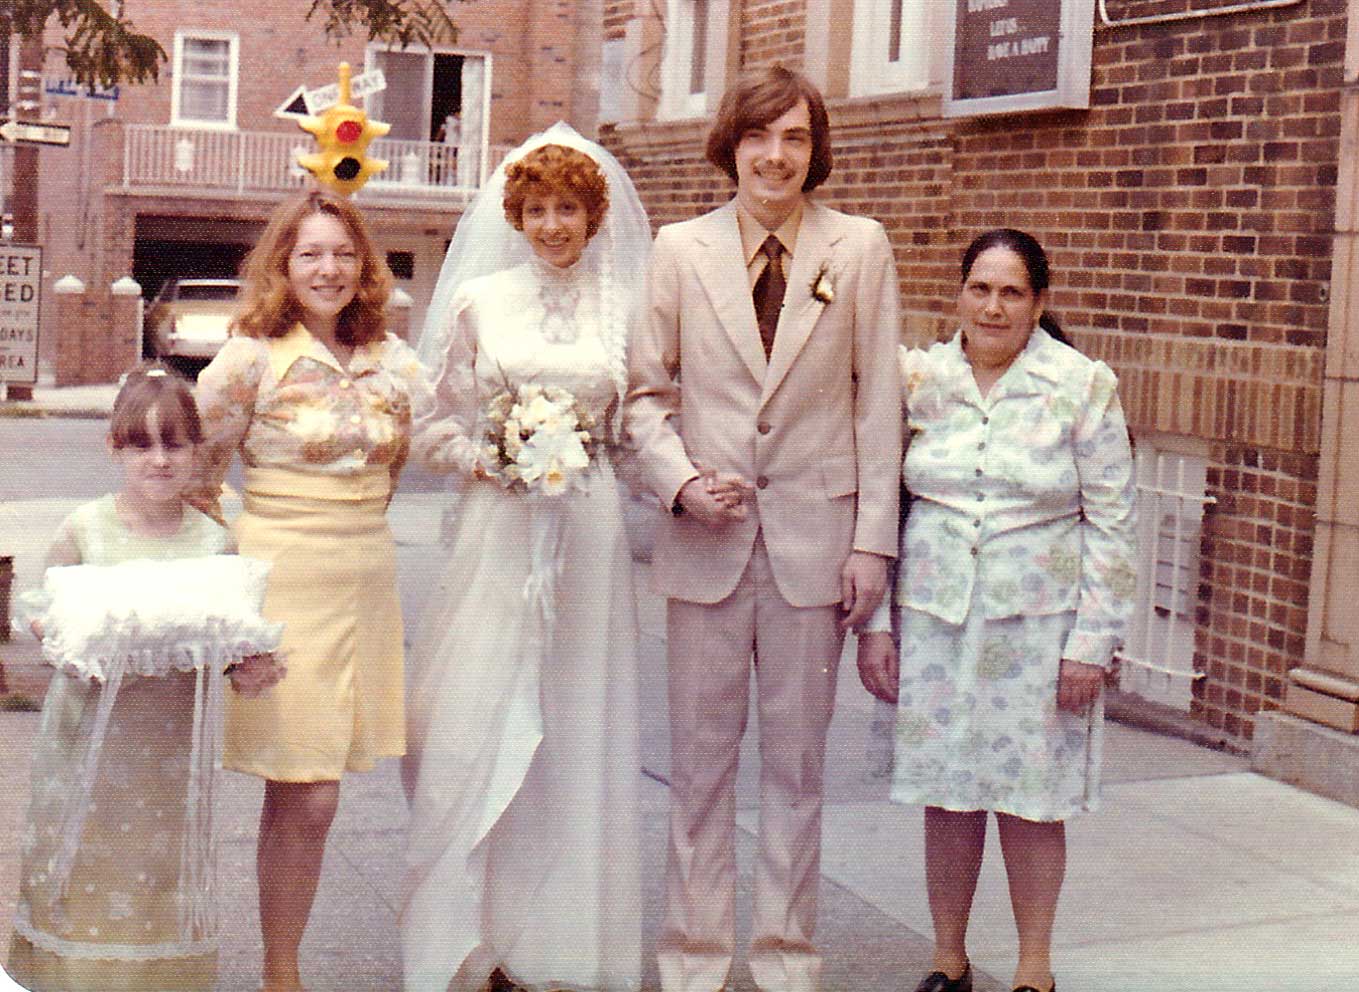 Mariage en 1976 aux États-Unis